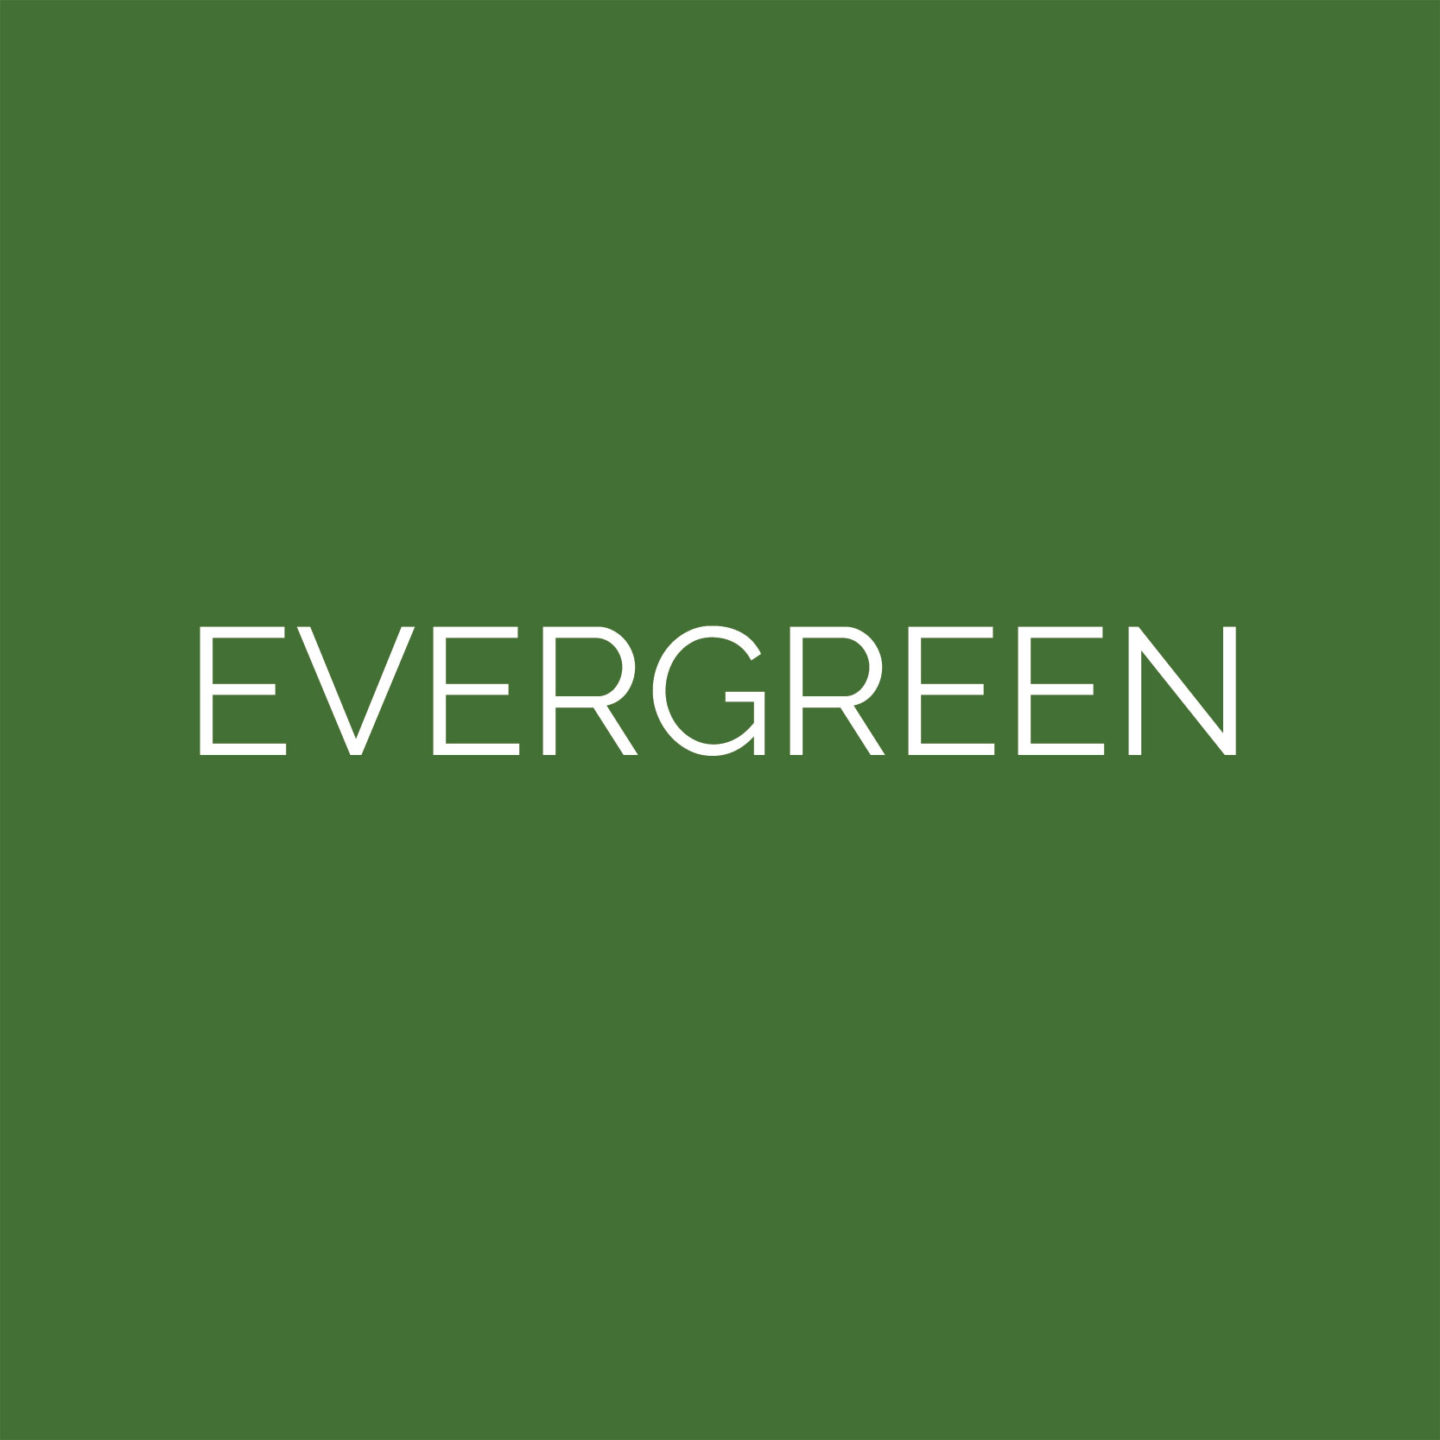 laser cut evergreen